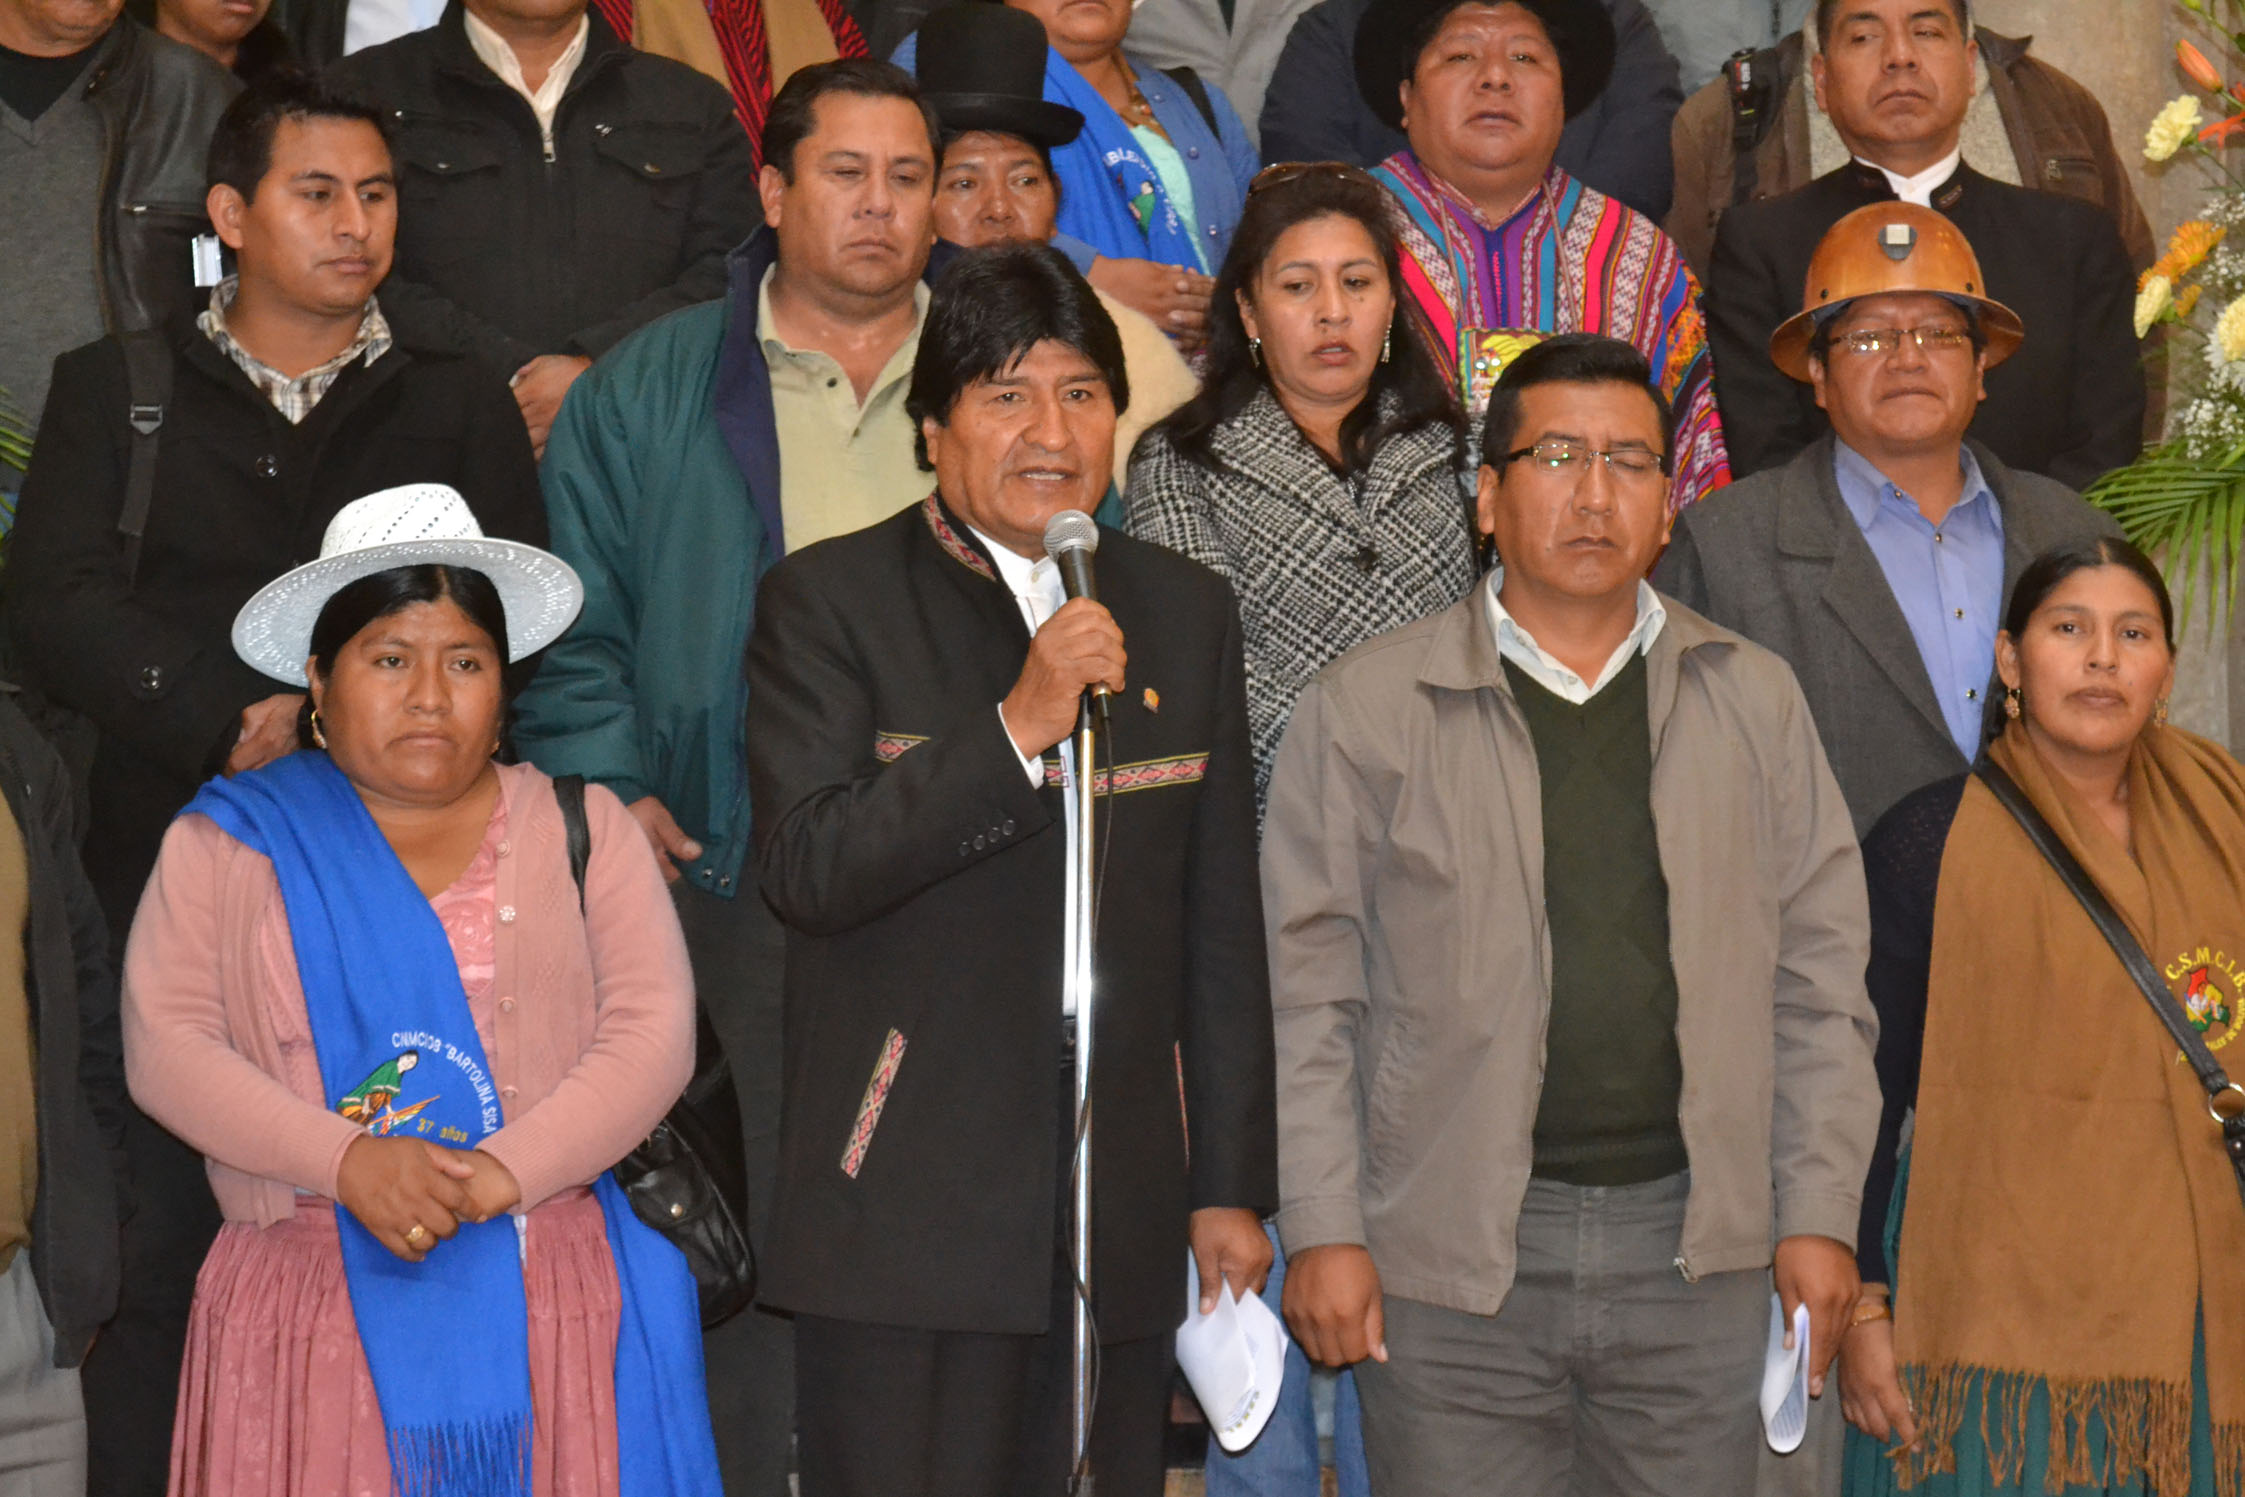 El jefe de Estado de Bolivia informó que durante la cumbre se hará un profundo debate sobre la migración.